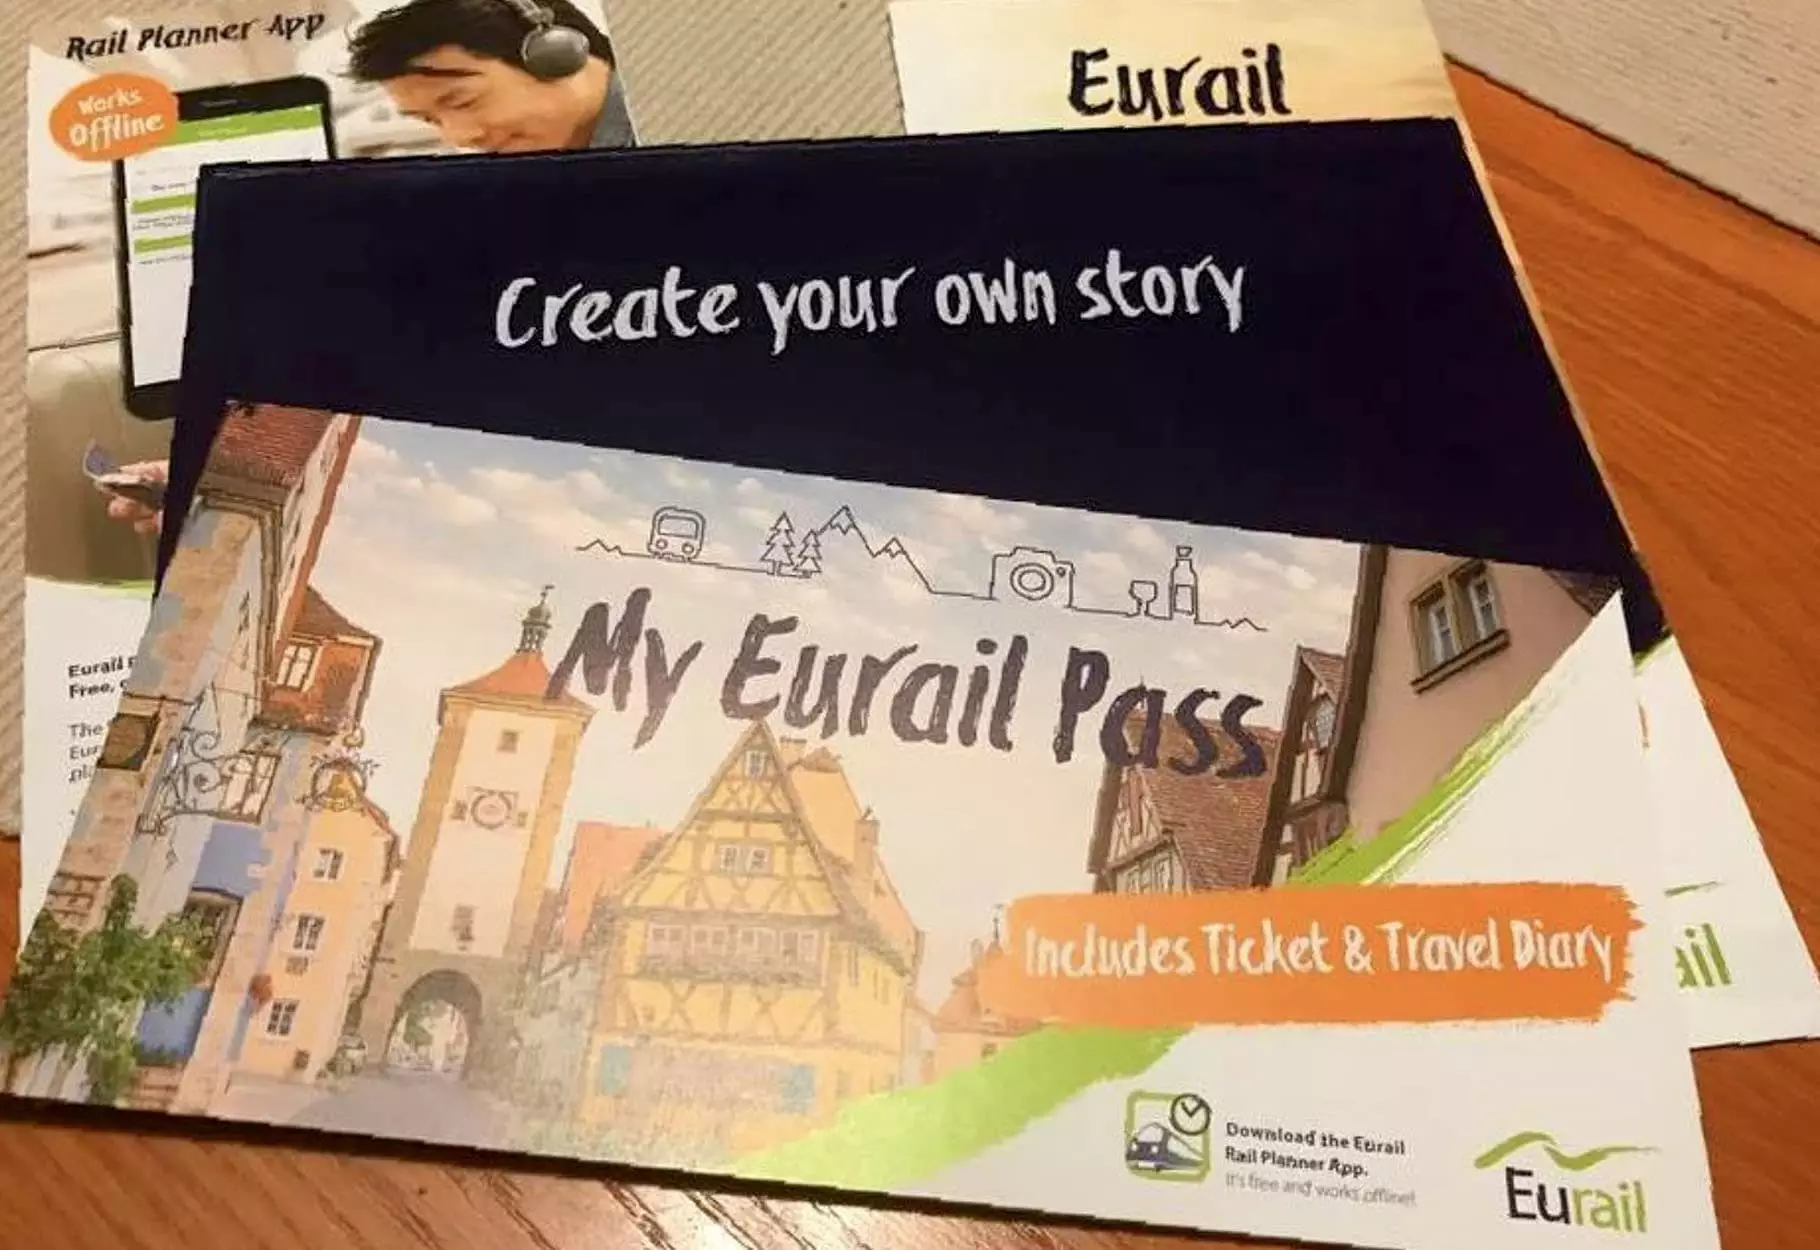 euro train travel pass